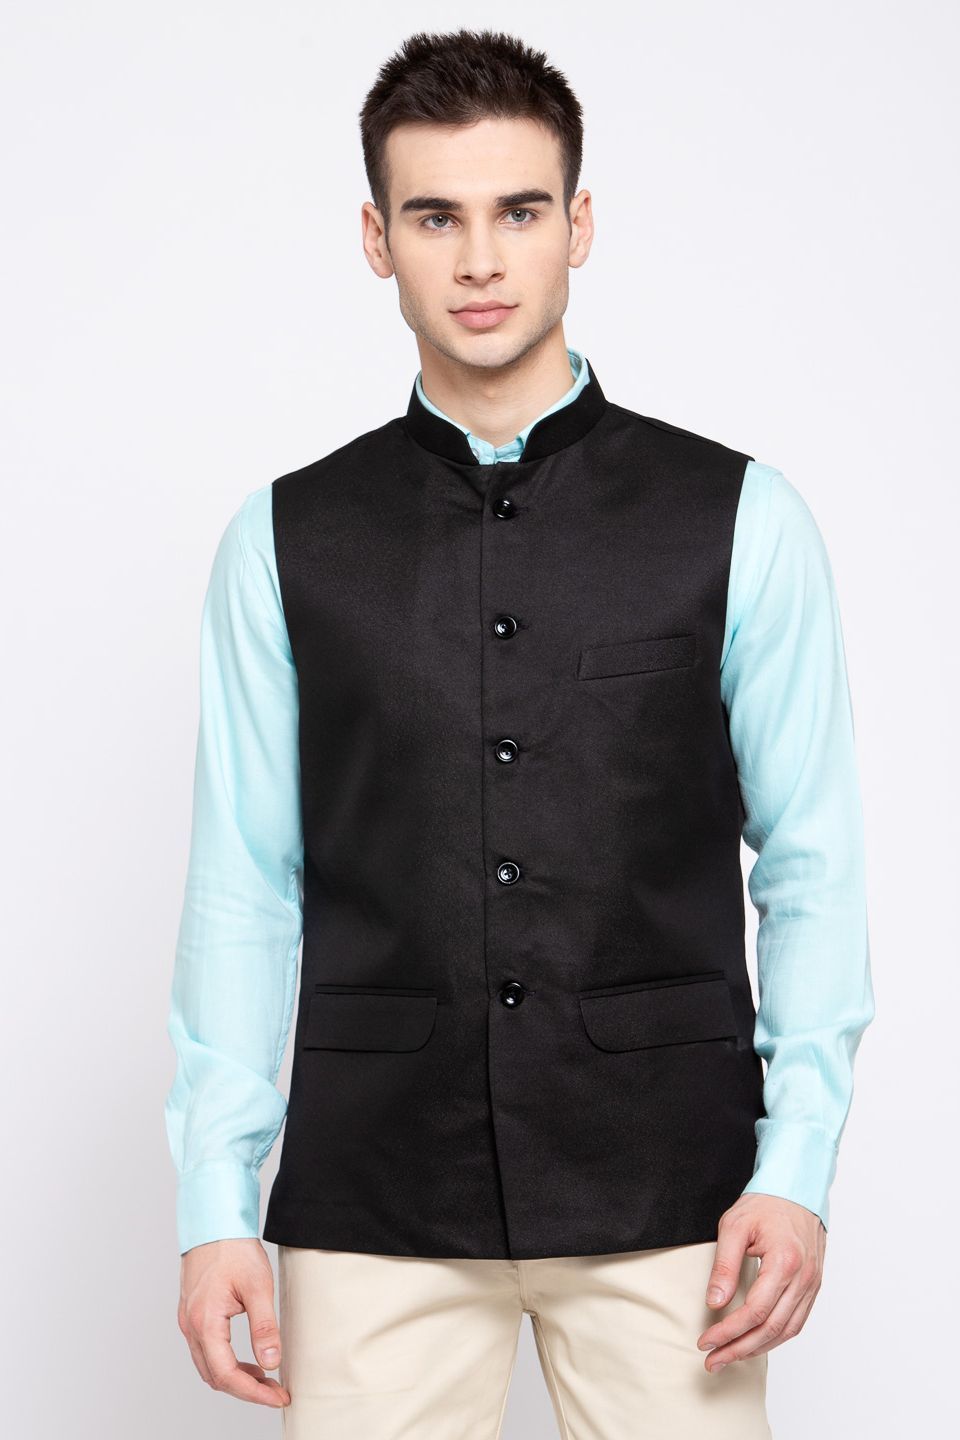 Wintage Men's Poly Blend Formal and Evening Nehru Jacket Vest Waistcoat : Black